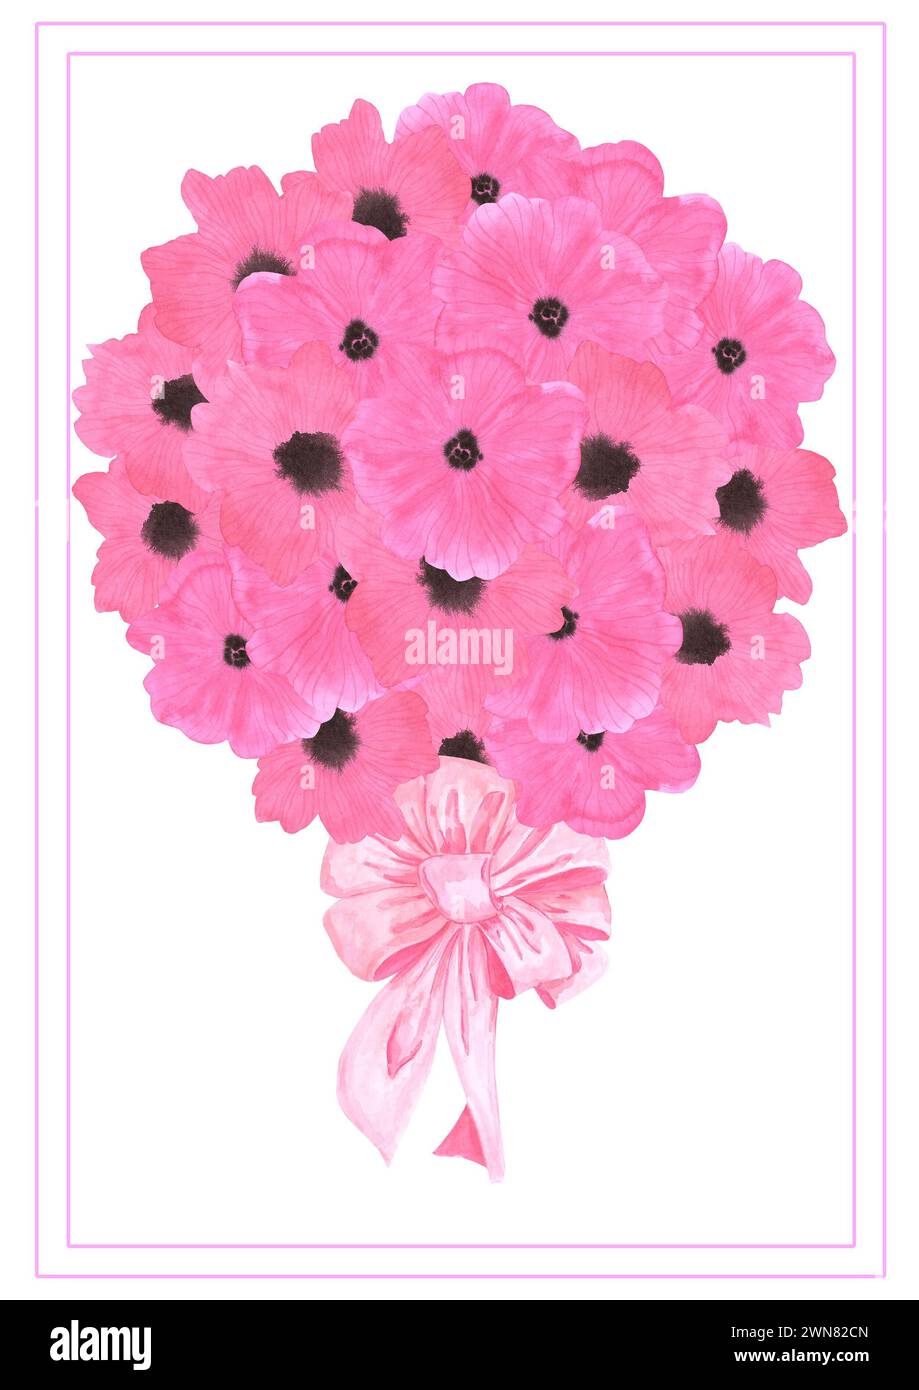 Carte postale bouquet de fleurs de coquelicot rose dessinée à l'aquarelle à la main isolé sur fond blanc. Peut être utilisé pour la carte, l'affiche et d'autres produits imprimés Banque D'Images